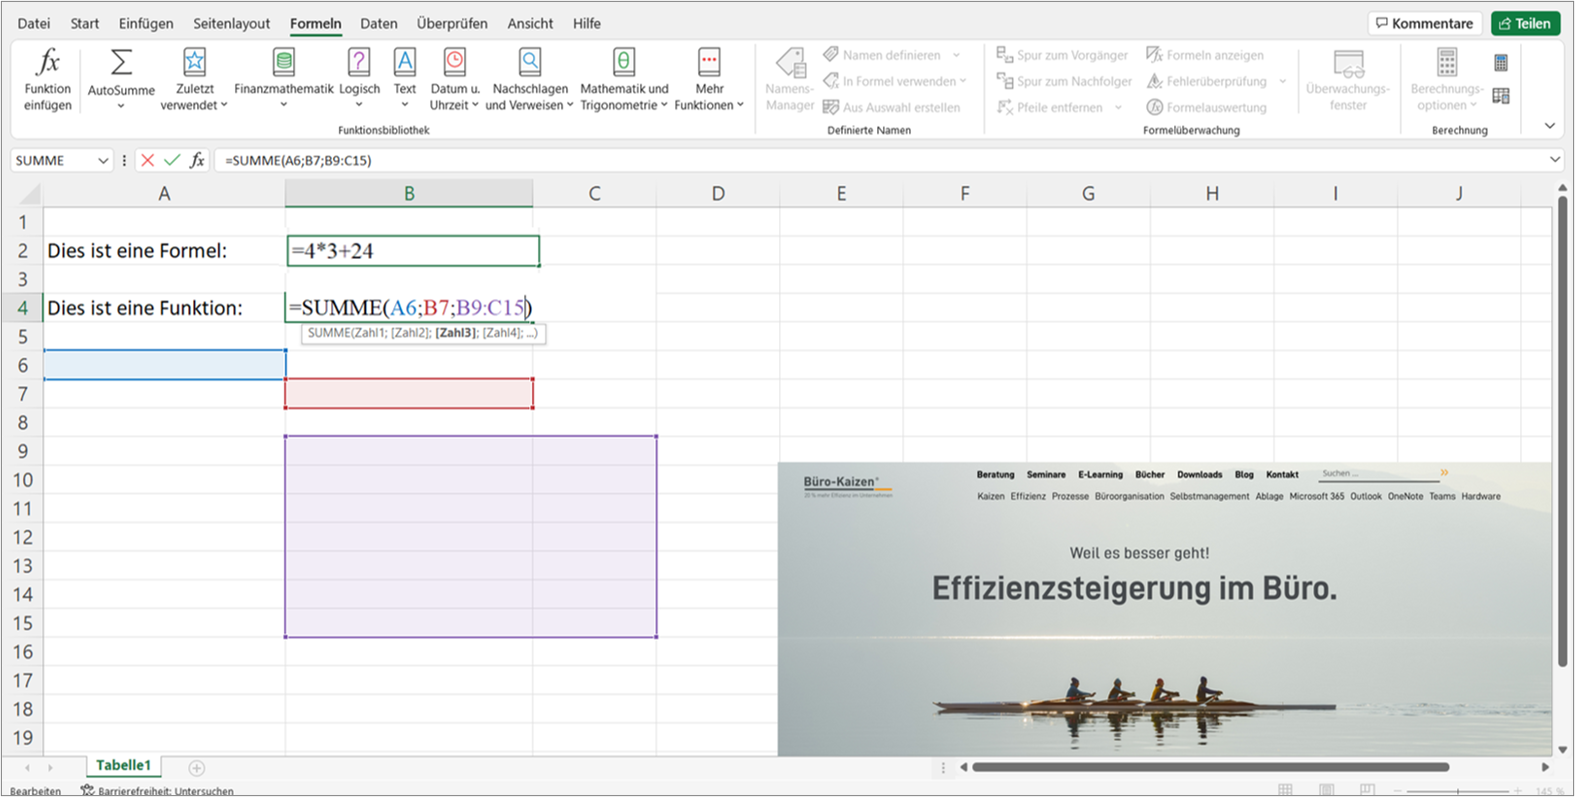 Mit den Formeln kann man in Excel komplexe Rechenaufgaben innerhalb der Tabelle durchführen. Im Unterschied dazu beschreiben die Funktionen viel allgemeiner komplexe Handlungsanweisungen. Bild: Microsoft Excel, Büro-Kaizen.